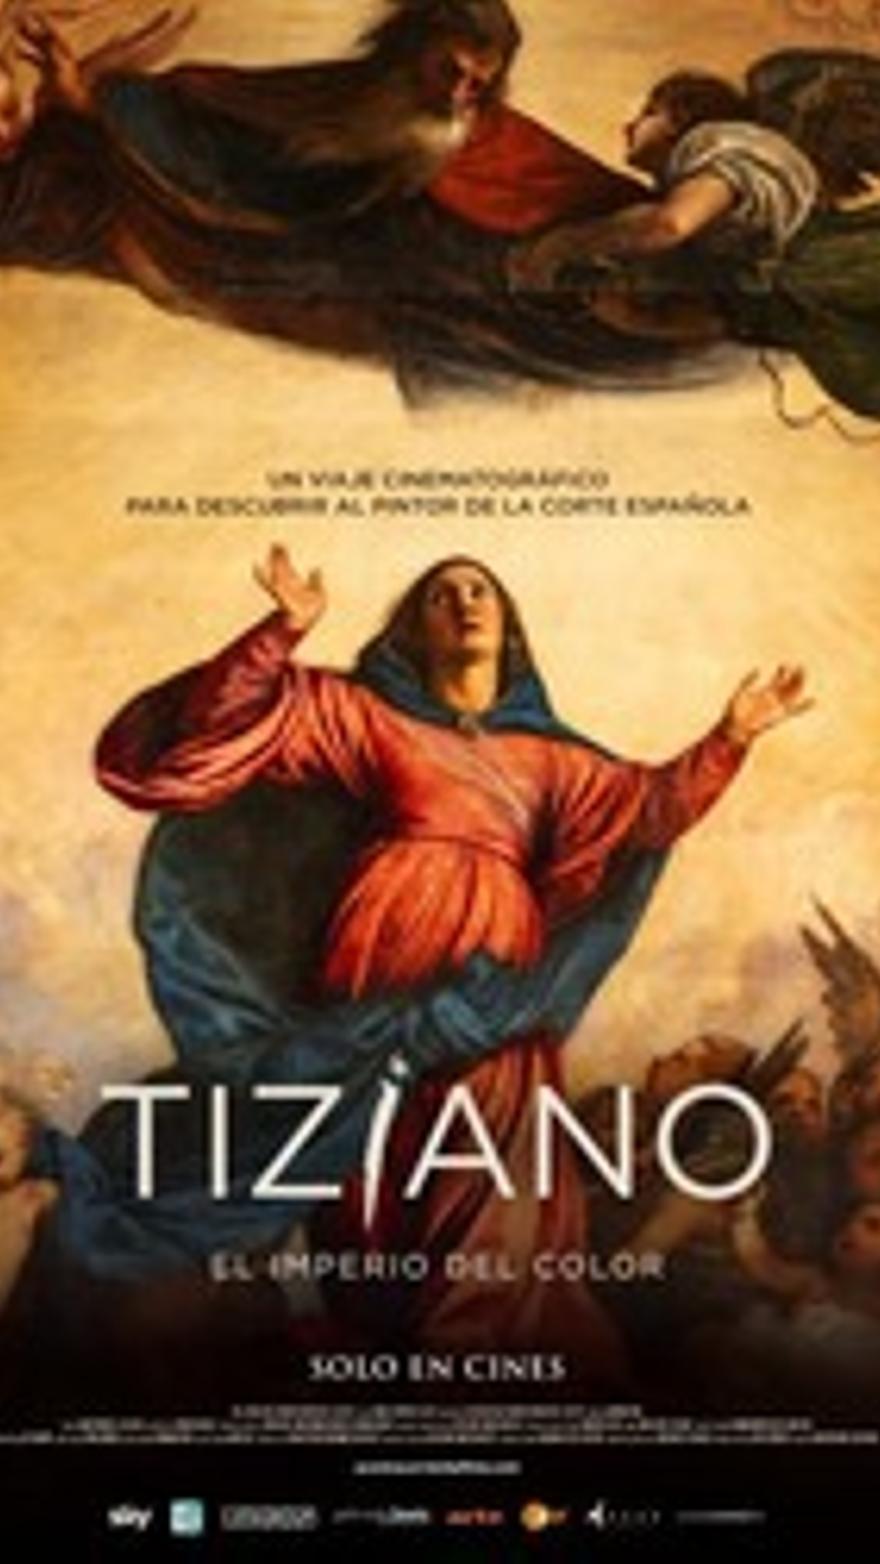 Tiziano. El imperio del color V.O.S.E.